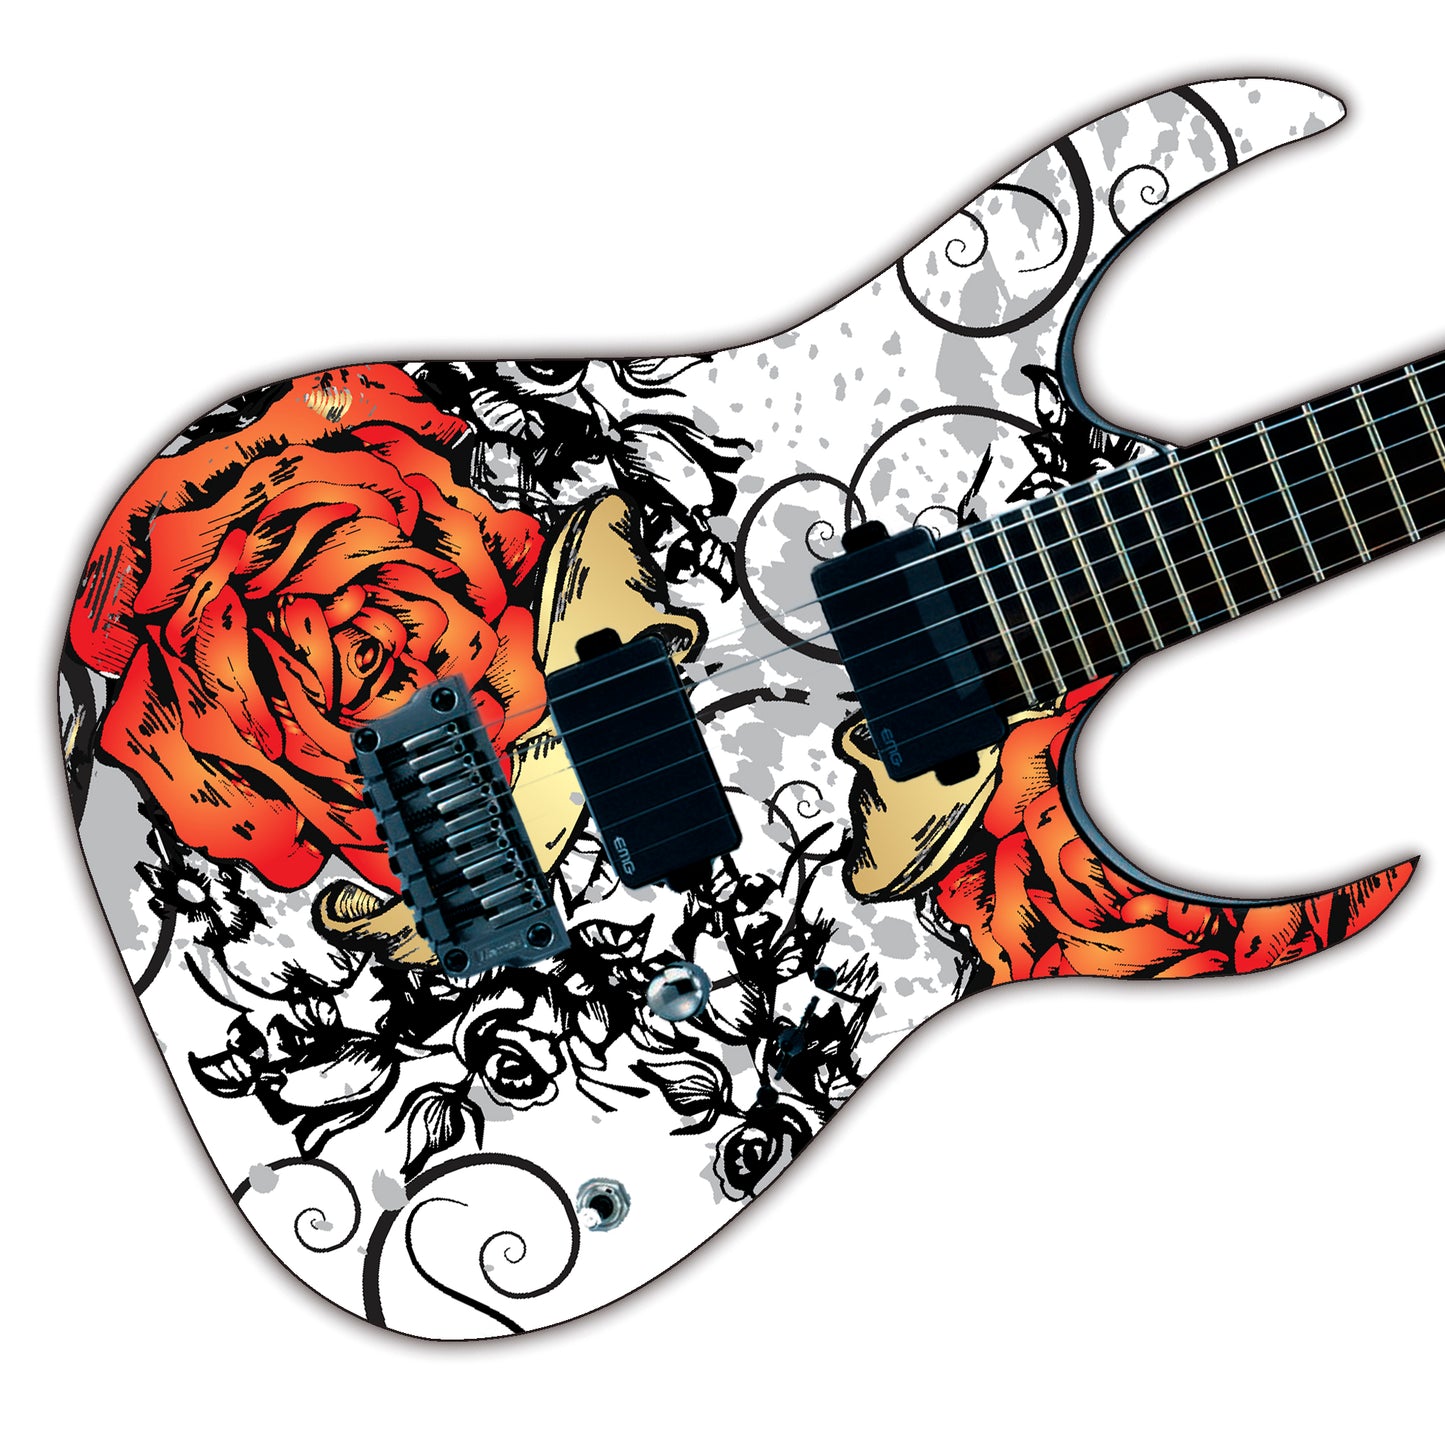 DesignDivil Custom Guitar Skin Wrap Laminated Vinyl Air Lease Decal. Manga Rose Tattoo GS23